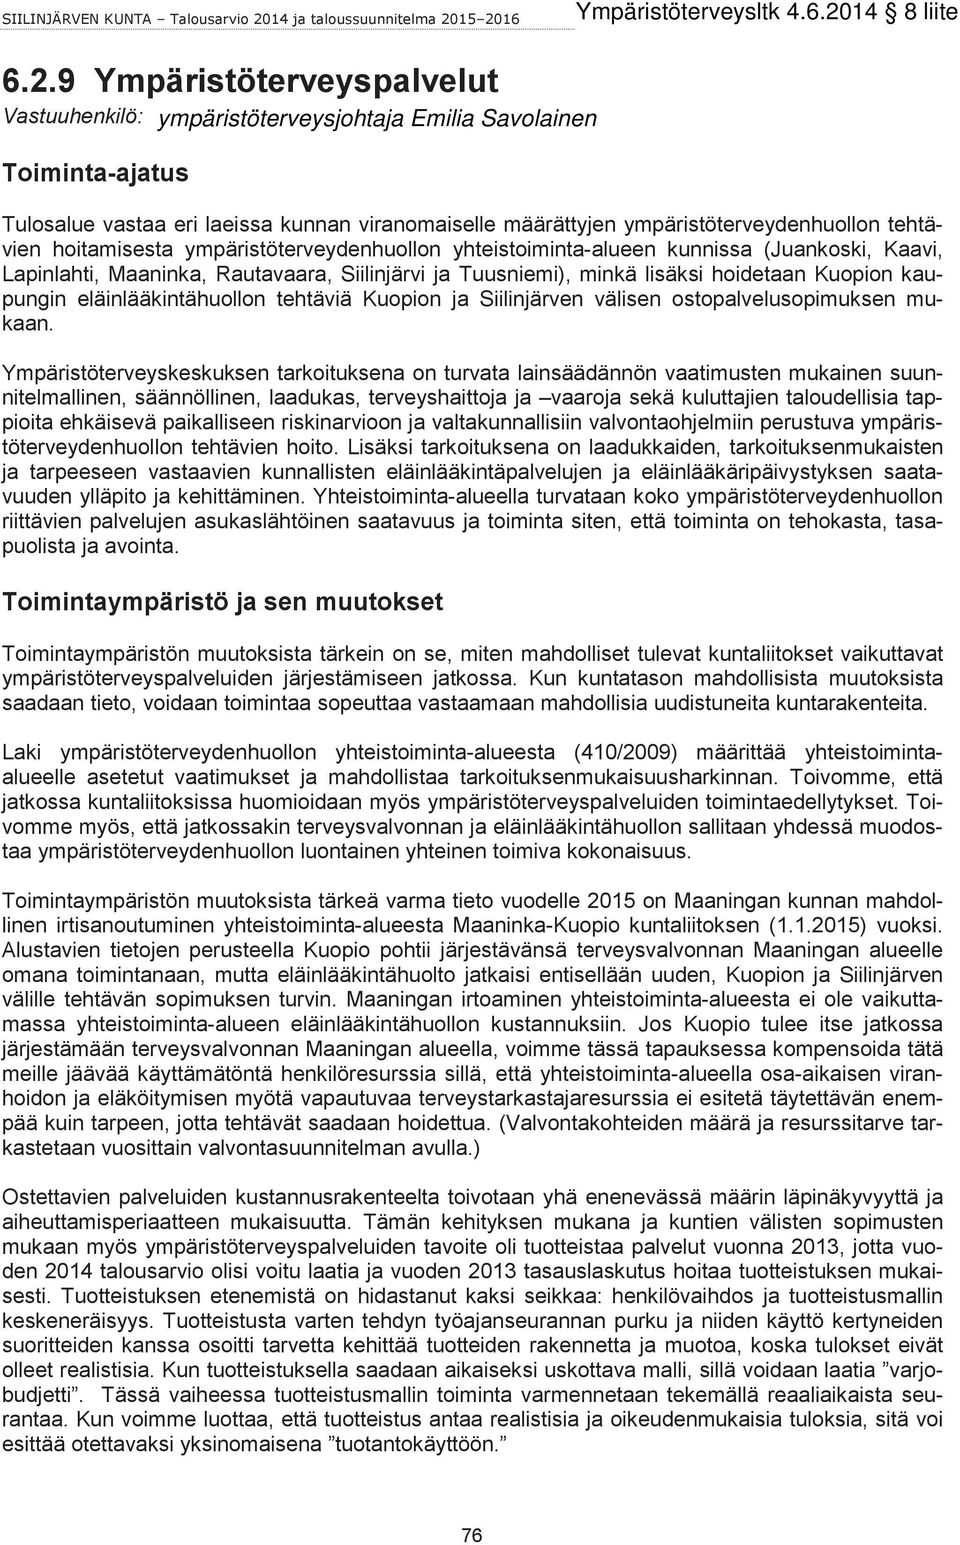 yhteistoiminta-alueen kunnissa (Juankoski, Kaavi, Lapinlahti, Maaninka, Rautavaara, Siilinjärvi ja Tuusniemi), minkä lisäksi hoidetaan Kuopion kaupungin eläinlääkintähuollon tehtäviä Kuopion ja